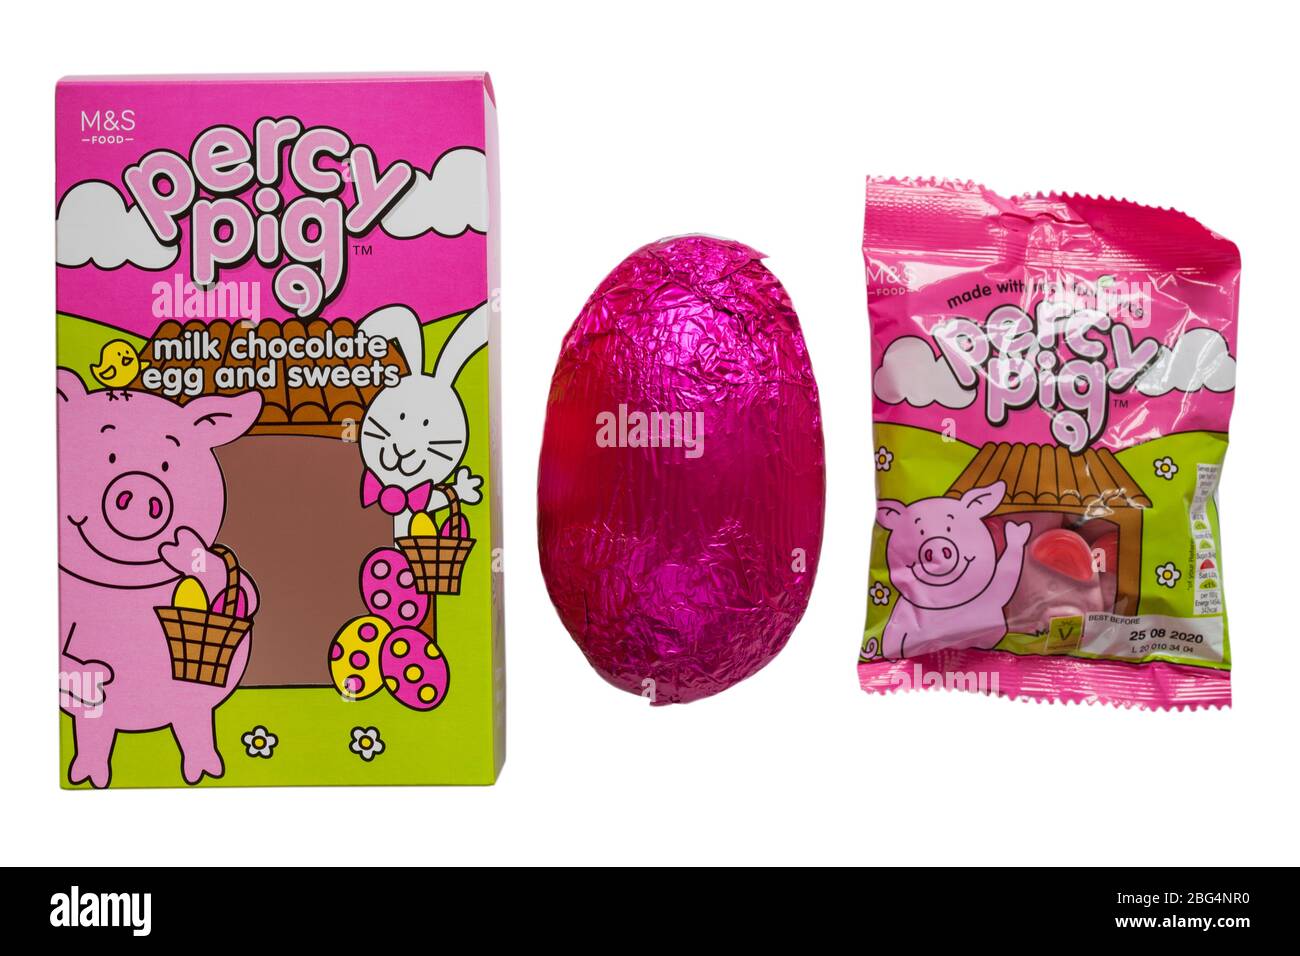 M&S Percy Pig uova di cioccolato al latte e dolci rimossi dalla scatola isolata su sfondo bianco - Percy Pig uovo di Pasqua Foto Stock